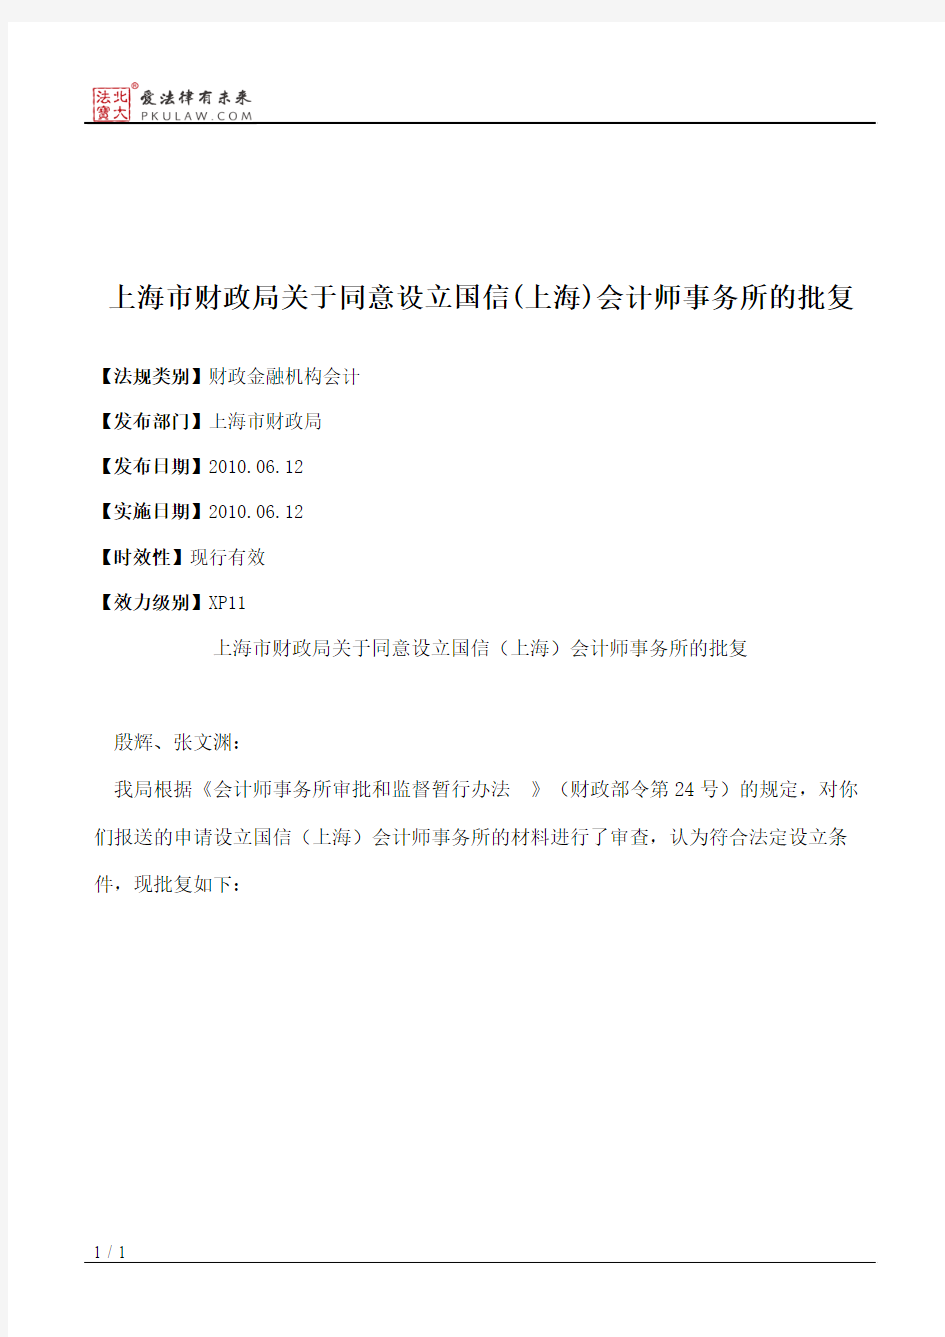 上海市财政局关于同意设立国信(上海)会计师事务所的批复